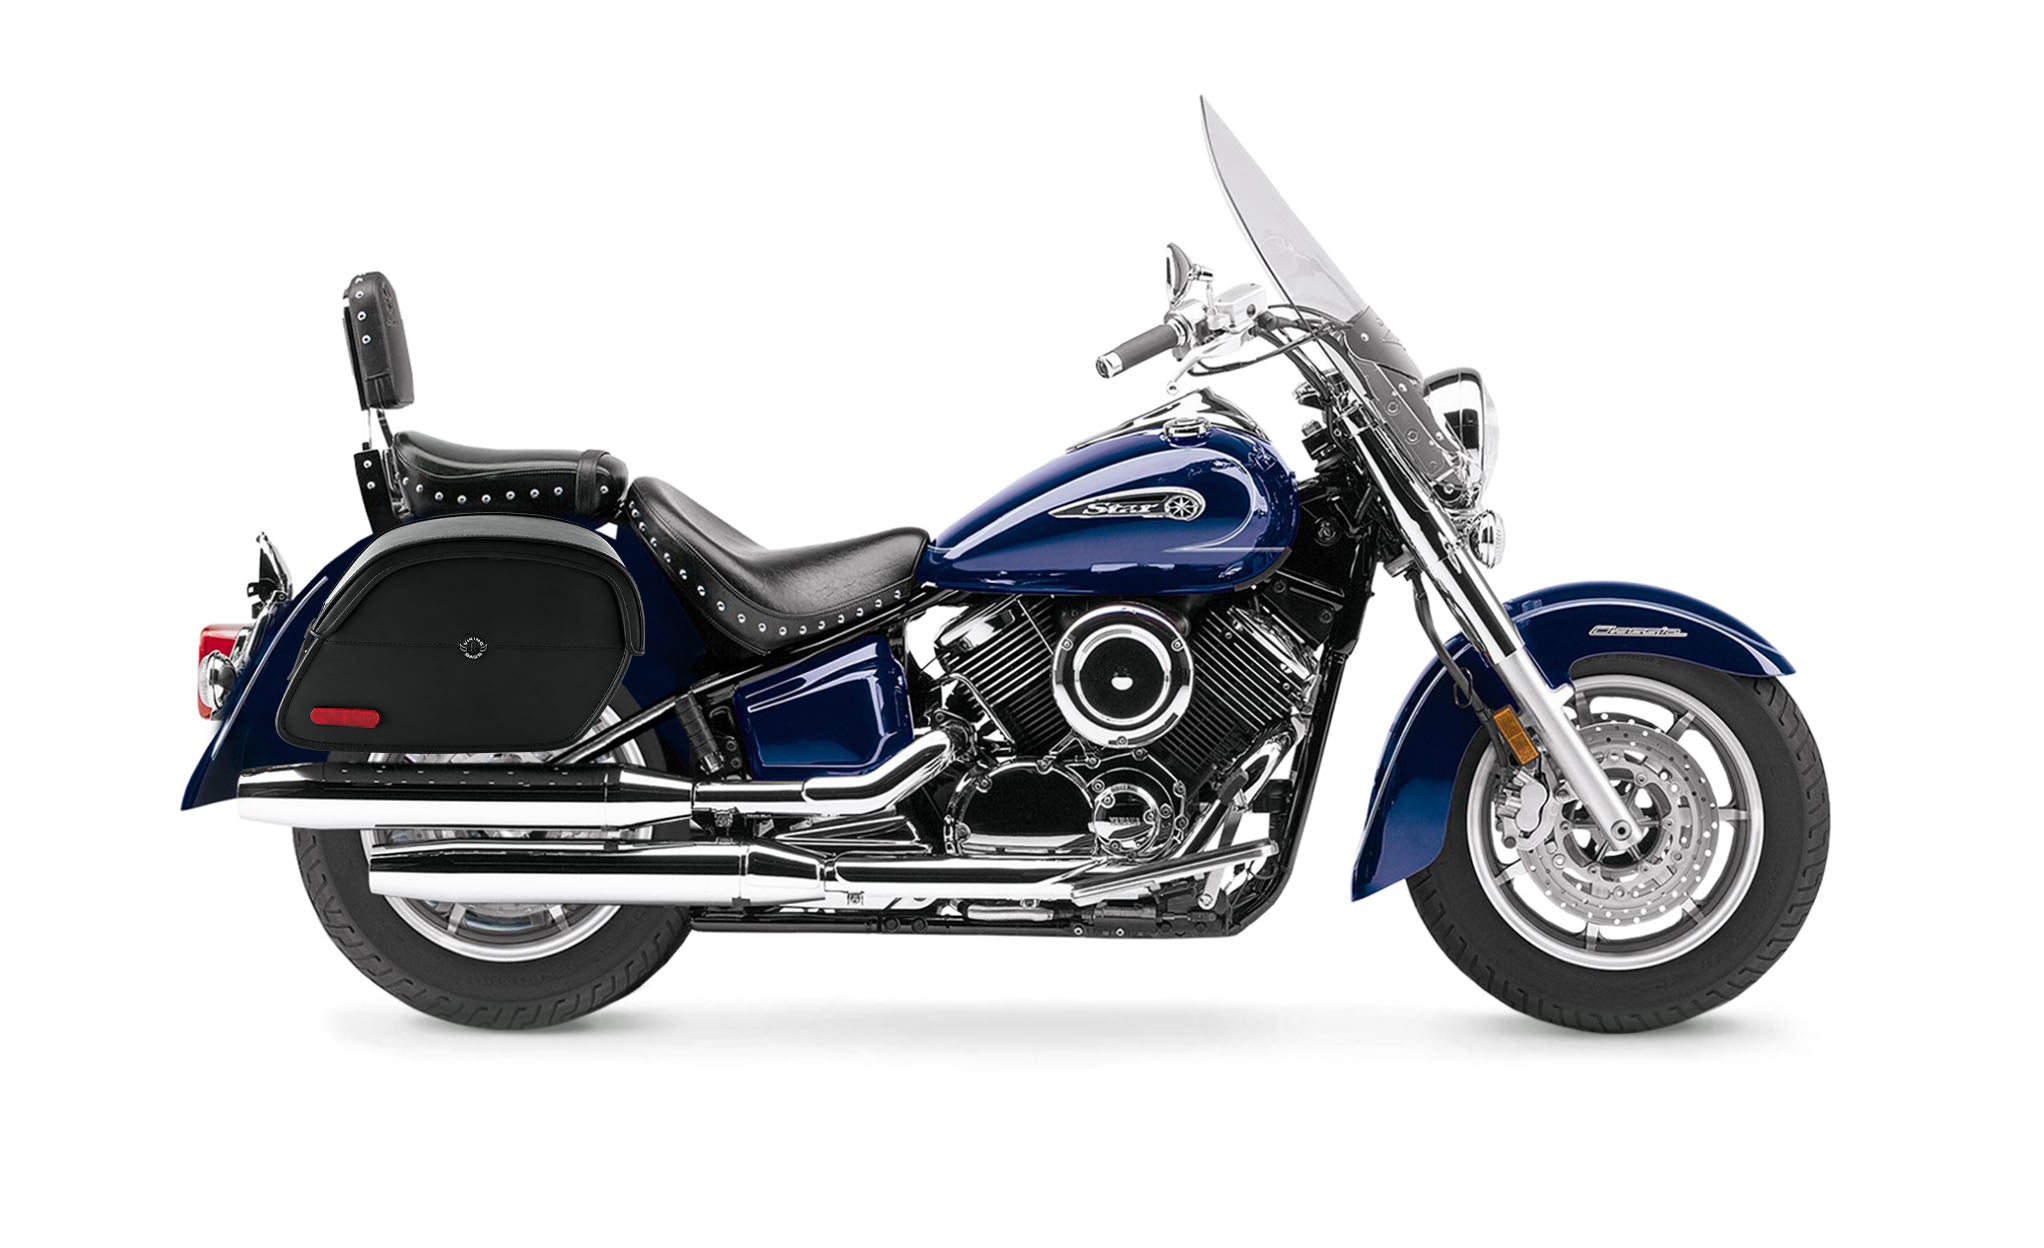 Viking California Large Yamaha Silverado Leather Motorcycle Saddlebags on Bike Photo @expand